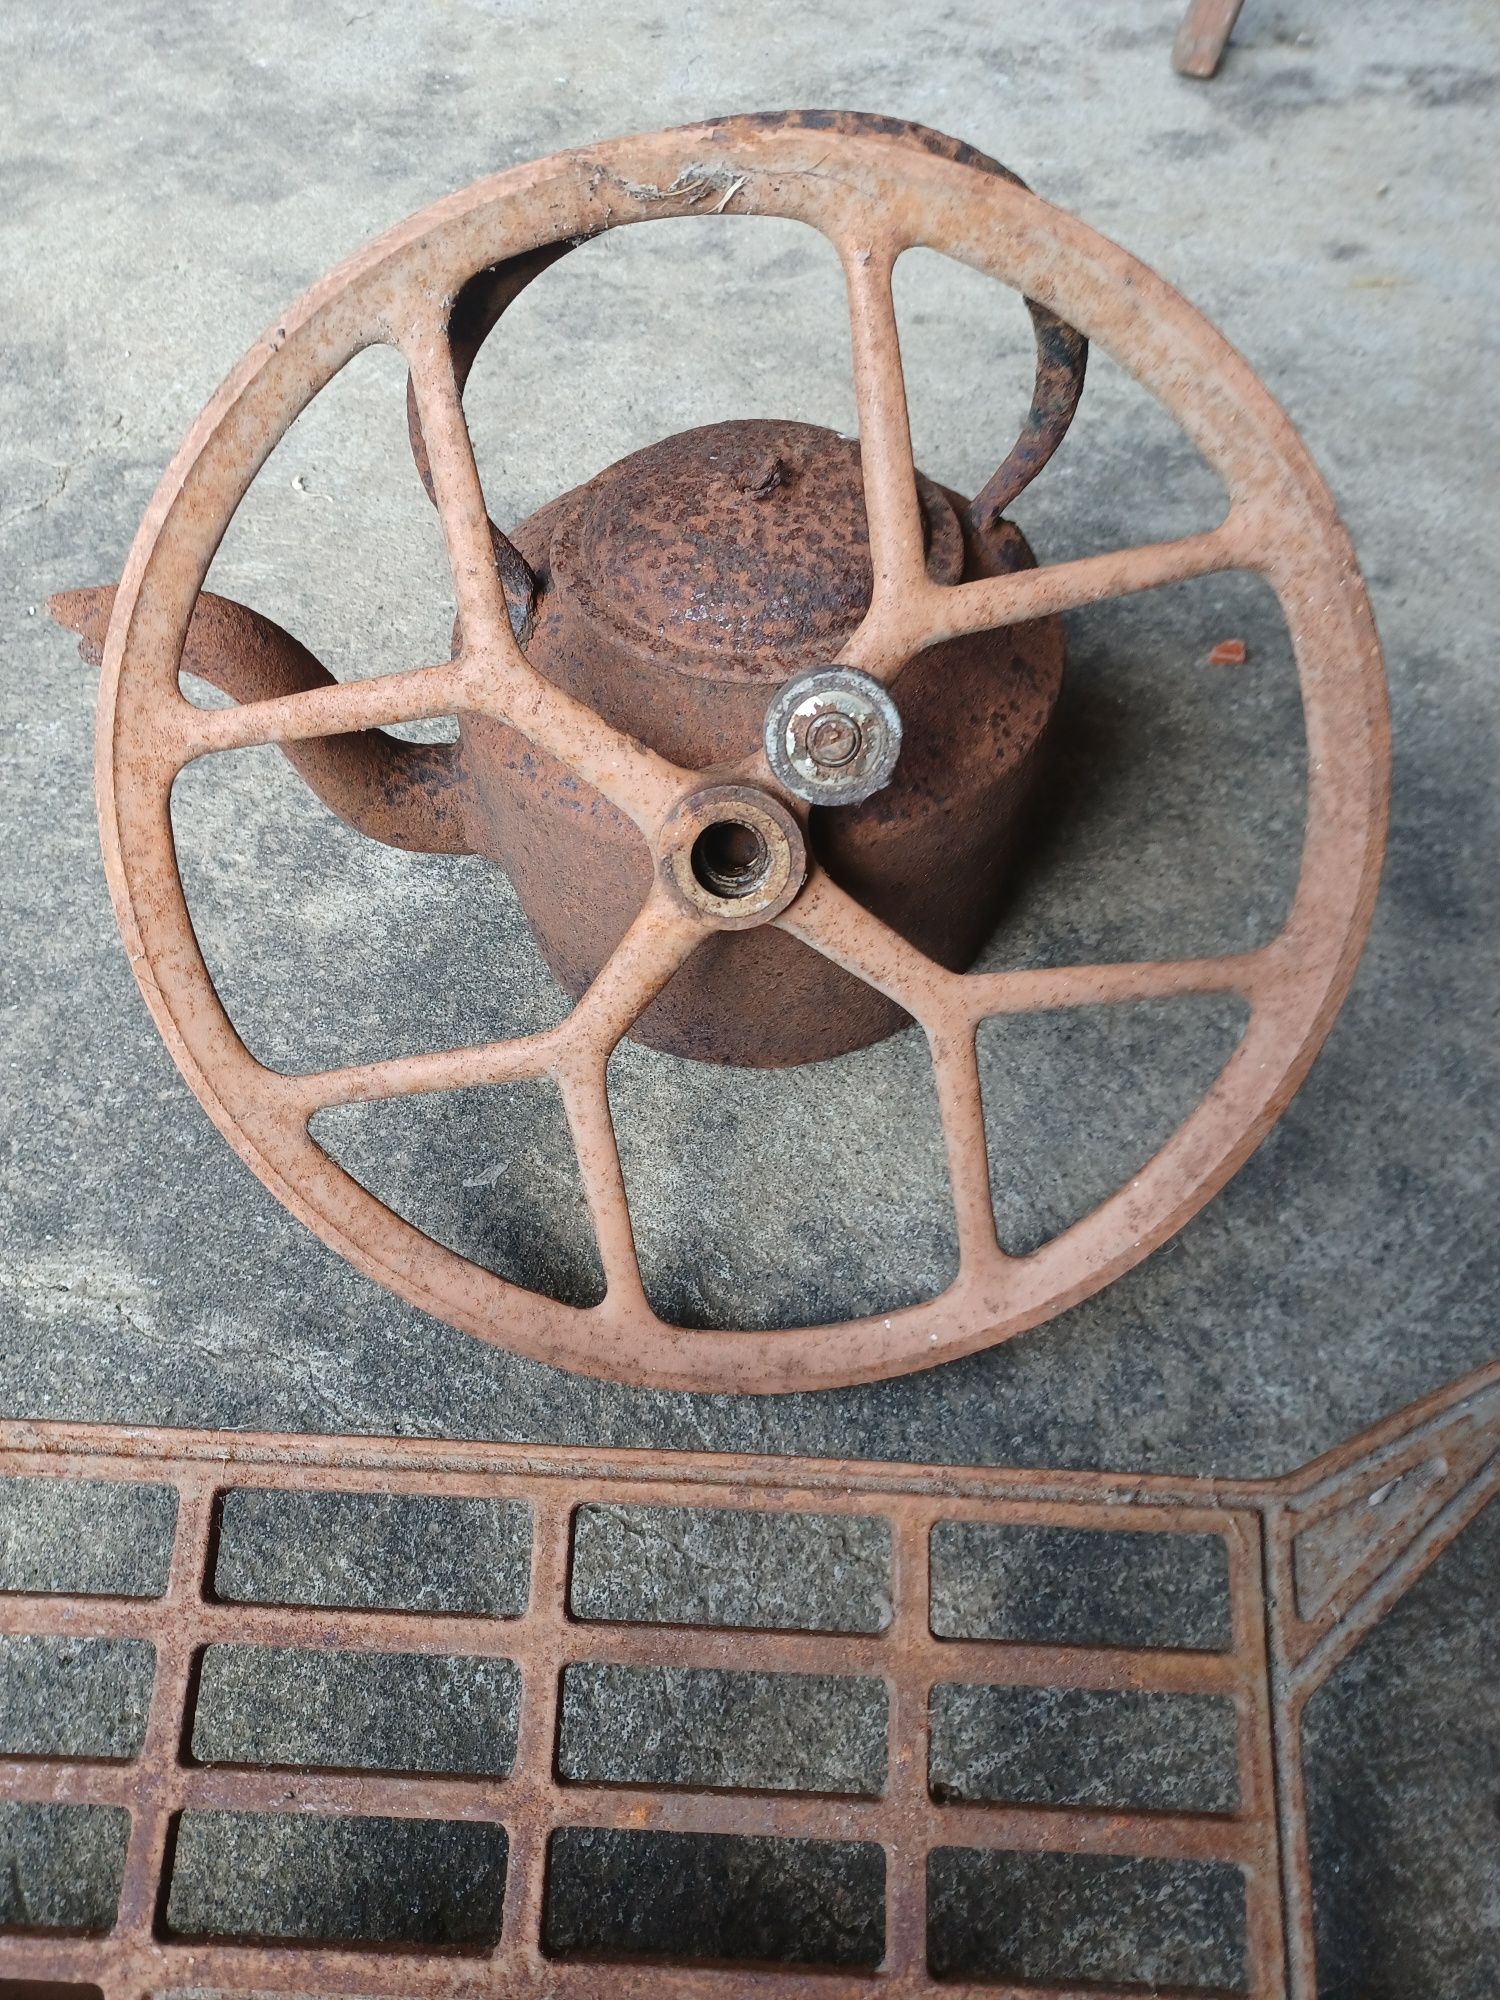 Pedal e roda de máquina de costura oliva